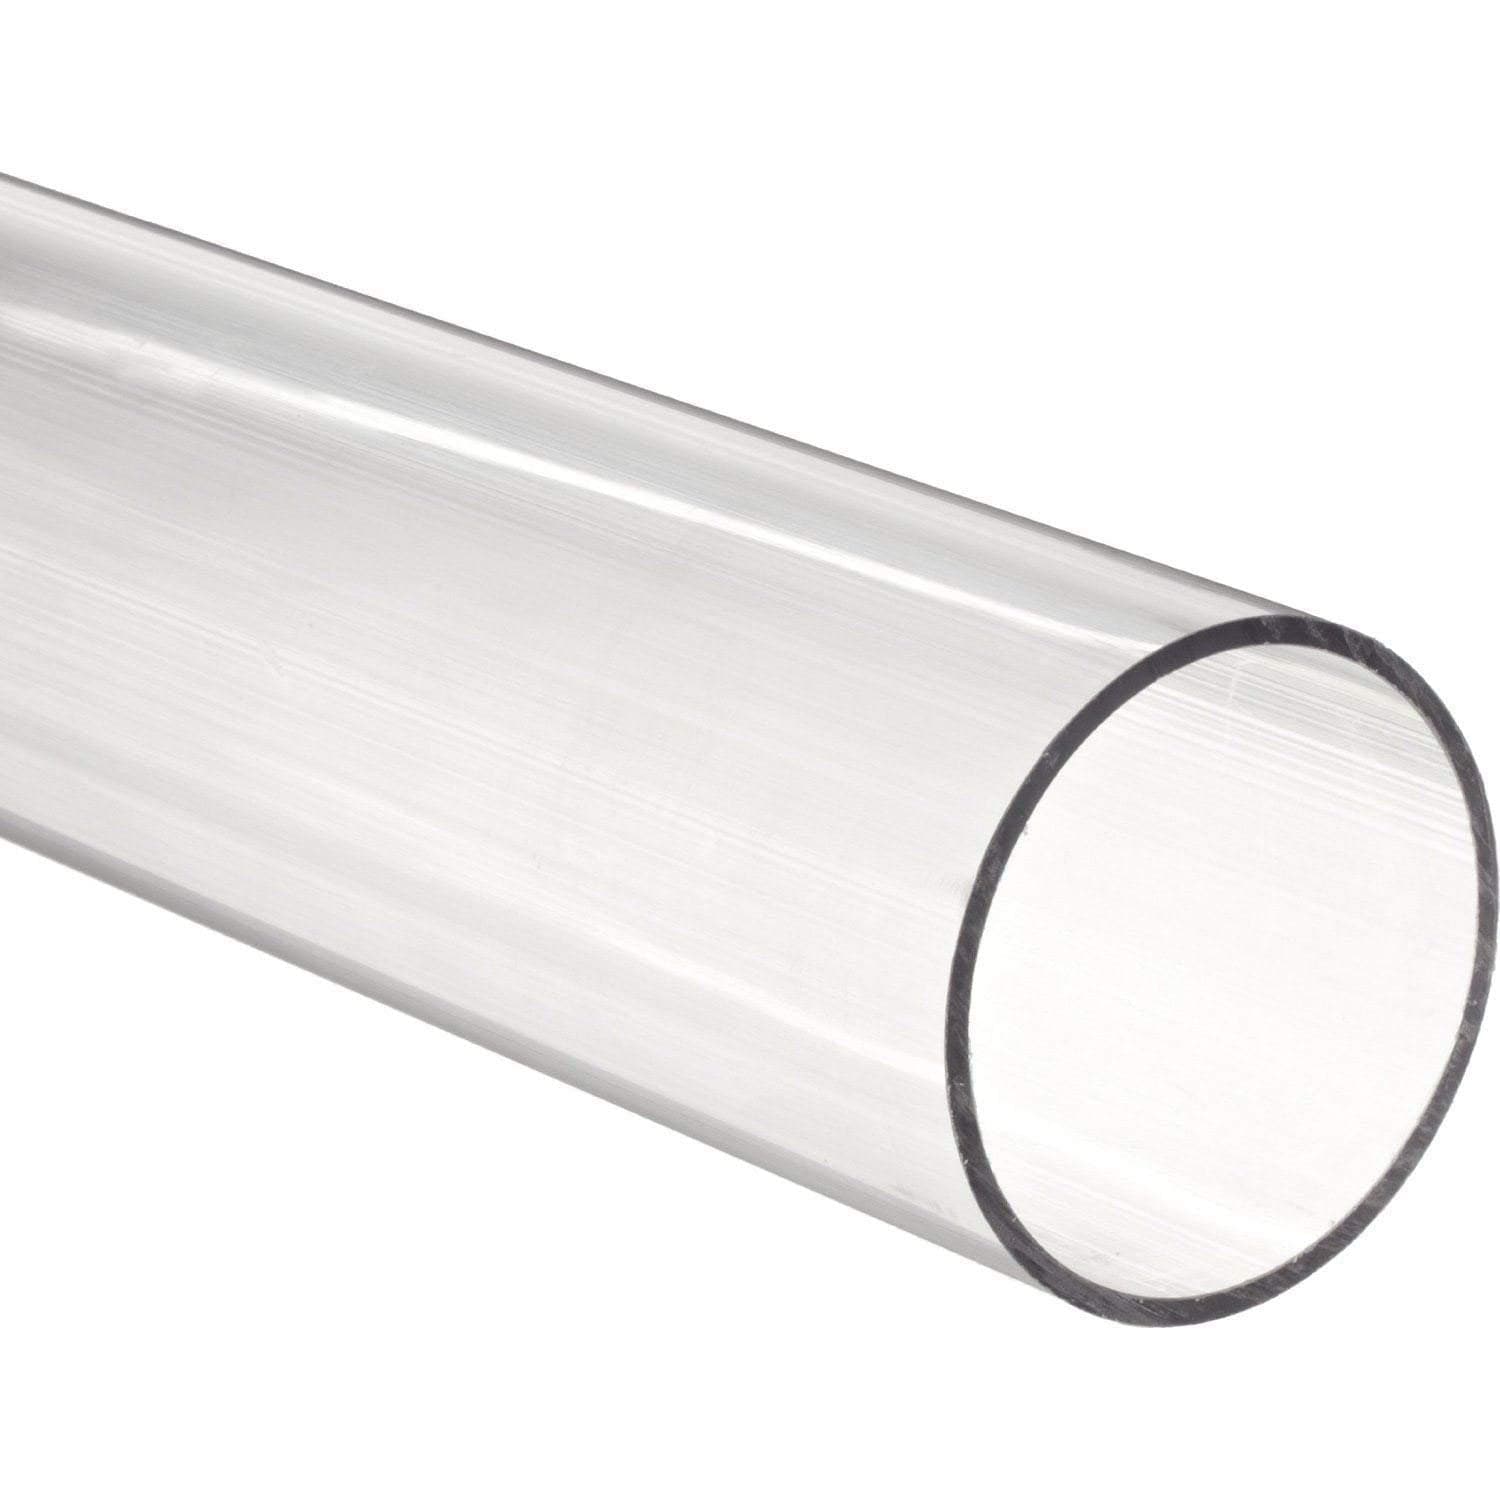 Tubo acrílico de 1/4" de diámetro exterior x 1/8" de diámetro interior - Transparente